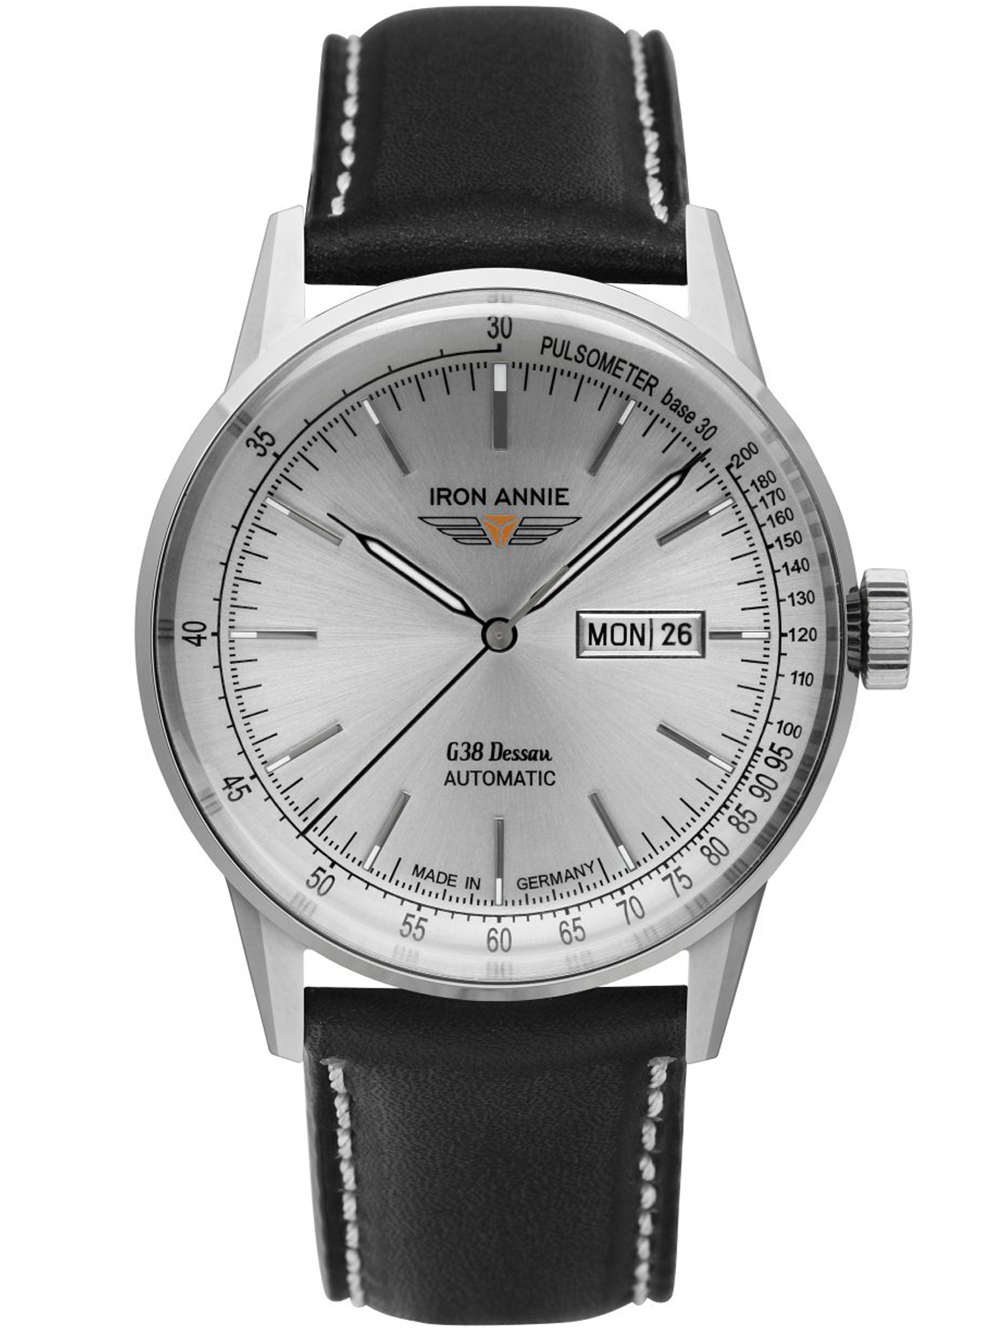 Pánské hodinky Iron Annie 5366-1 G38 Dessau